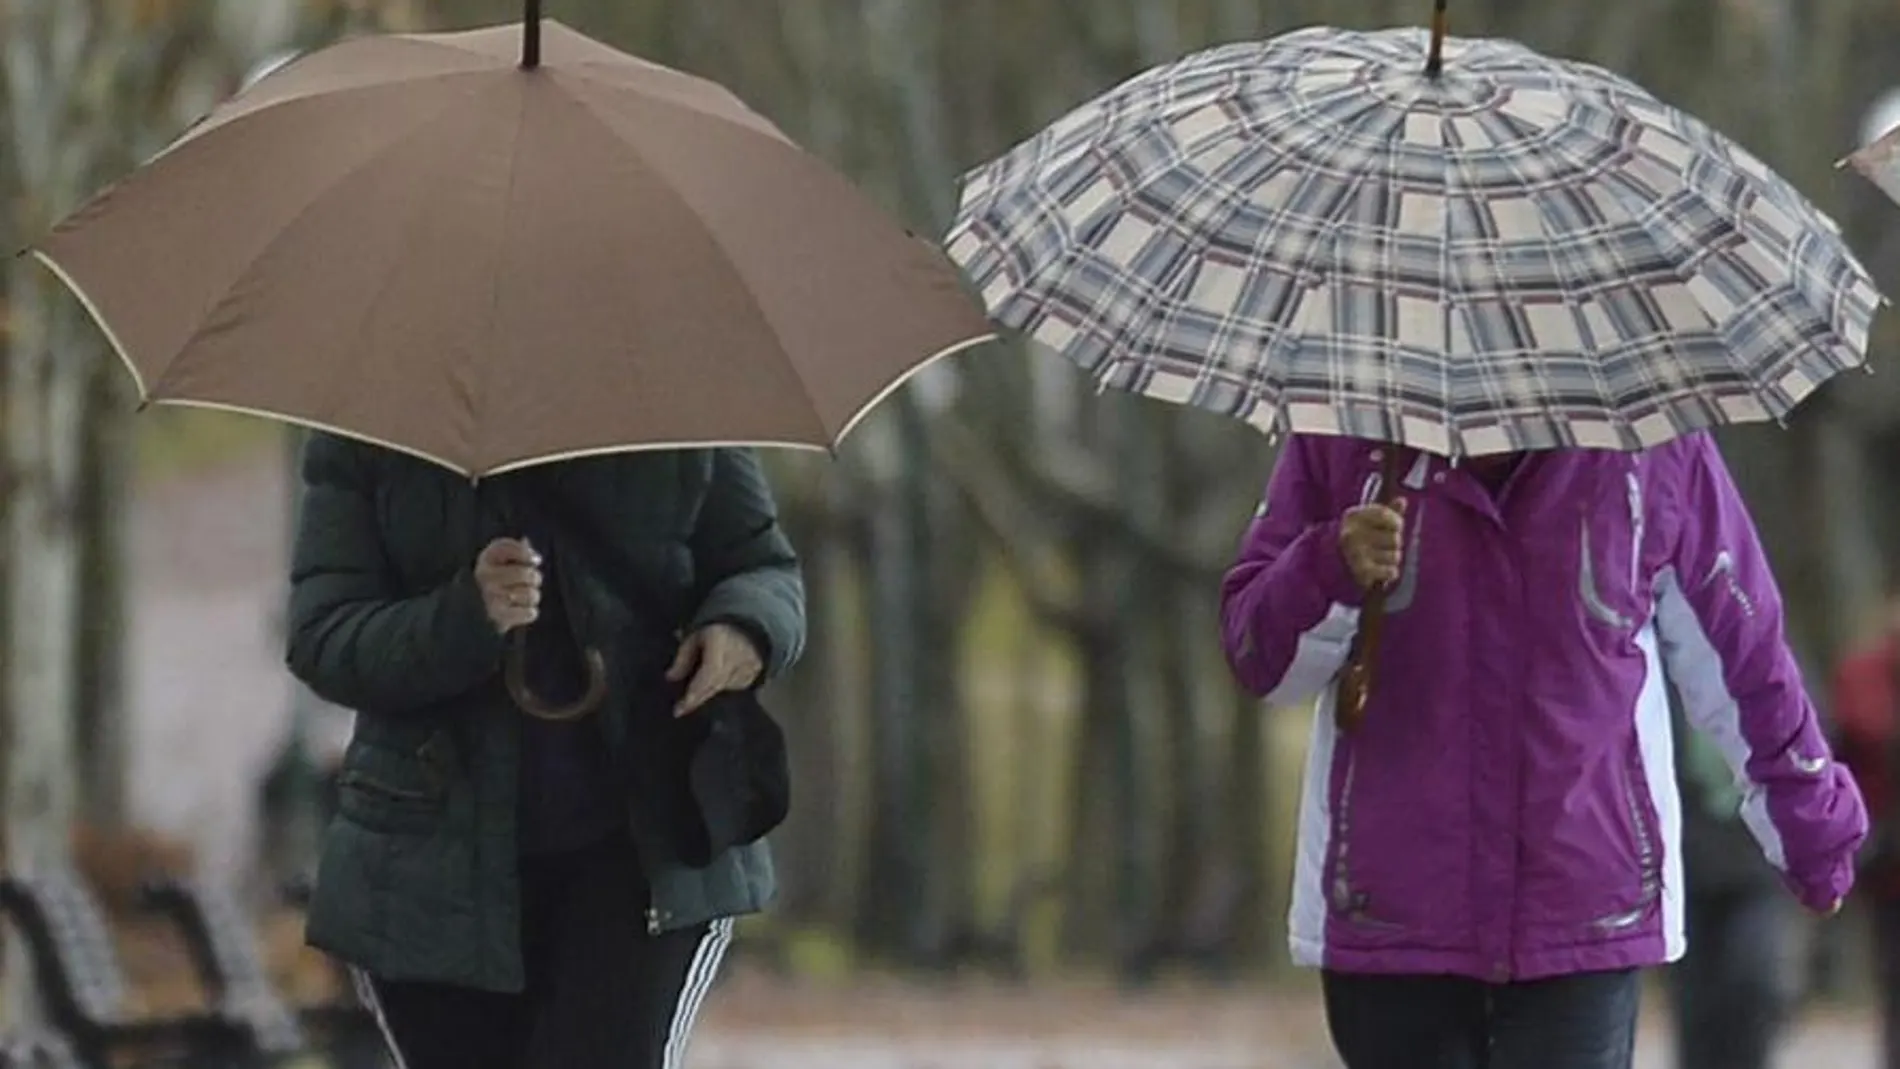 Dos mujeres pasean por Valladolid protegiéndose con paraguas de la lluvia